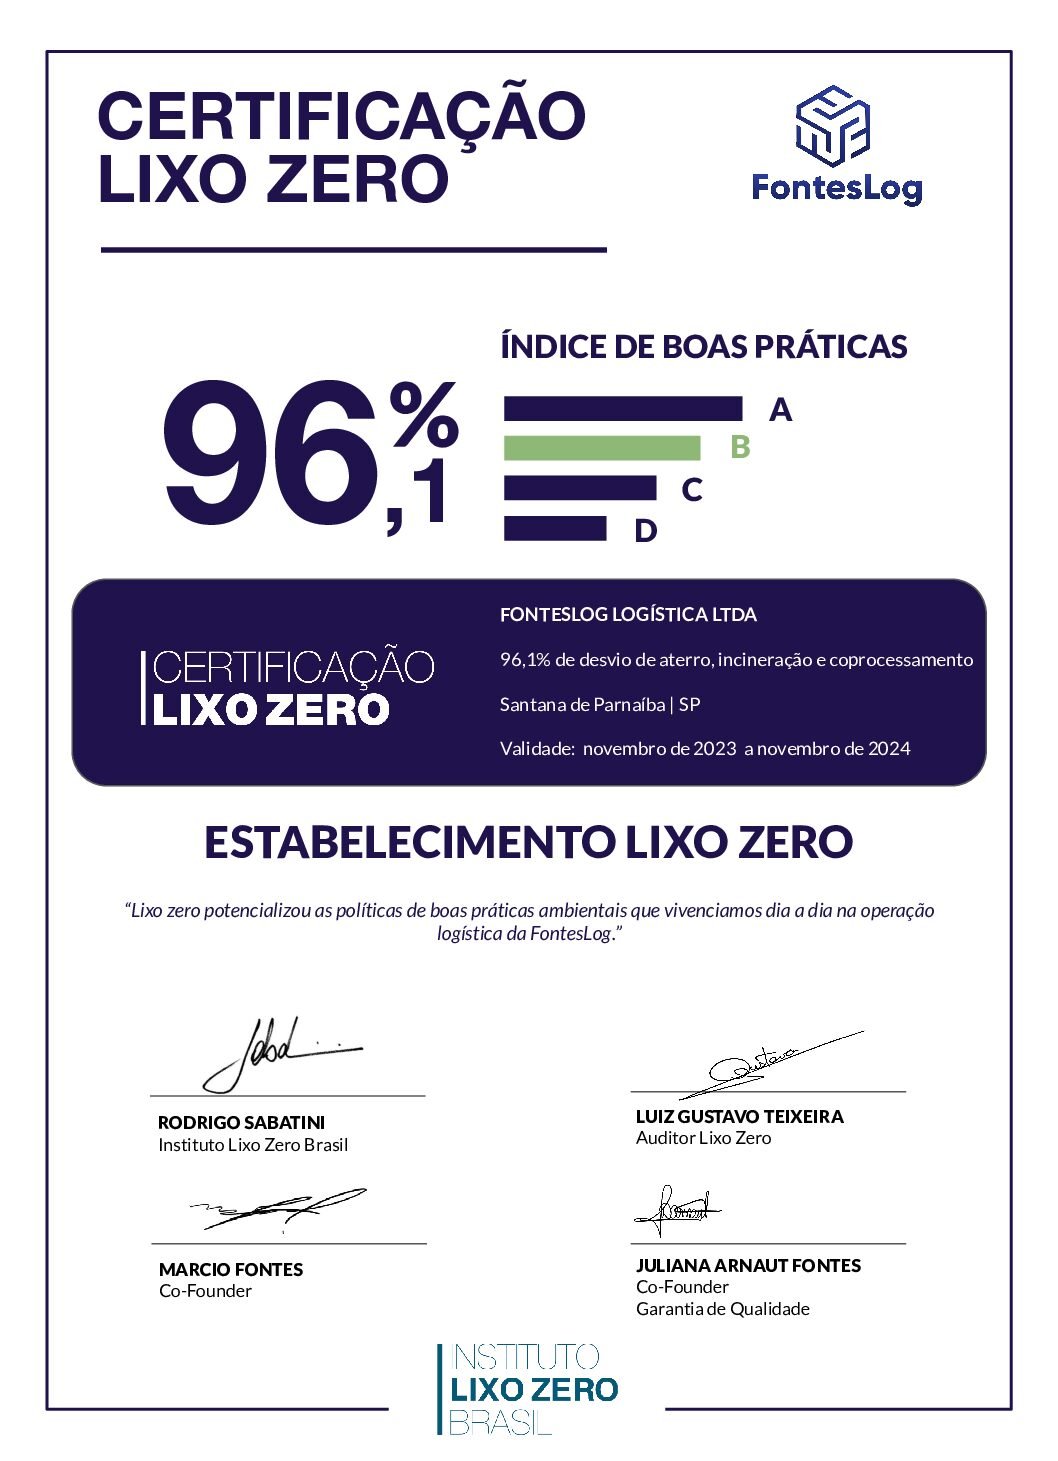 CertificaçãoLixoZero_FontesLog_SP_Novembro_2023 - signed-1